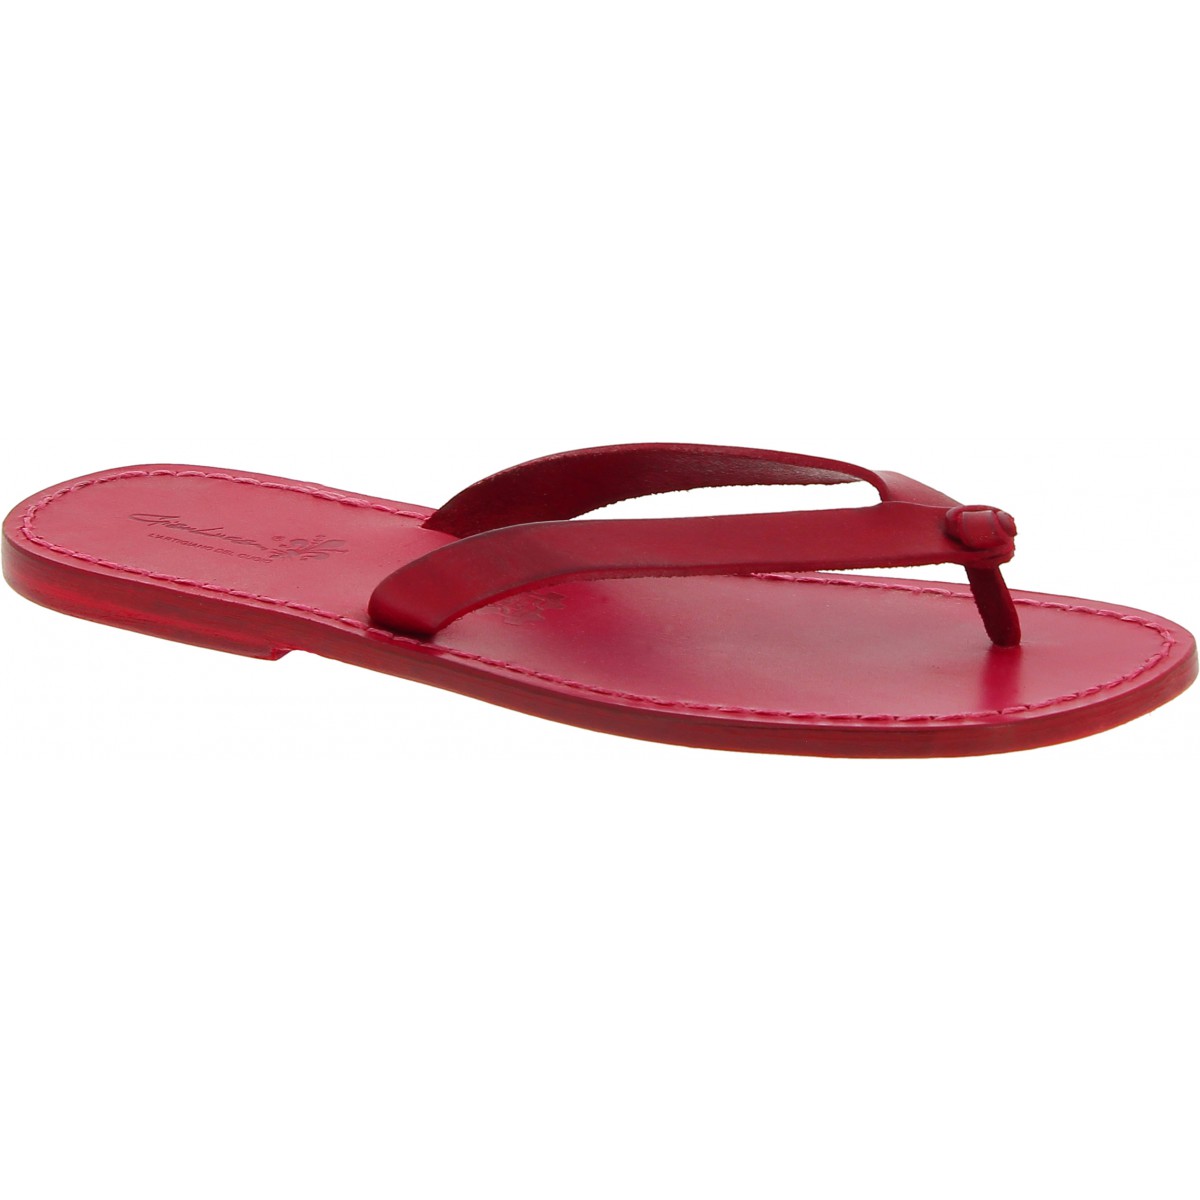 Claret Red Sandali Uomo – Barefoot Scarpe Calzature uomo Sandali Ciabatte Fatti a Mano – Tutta vera pelle 